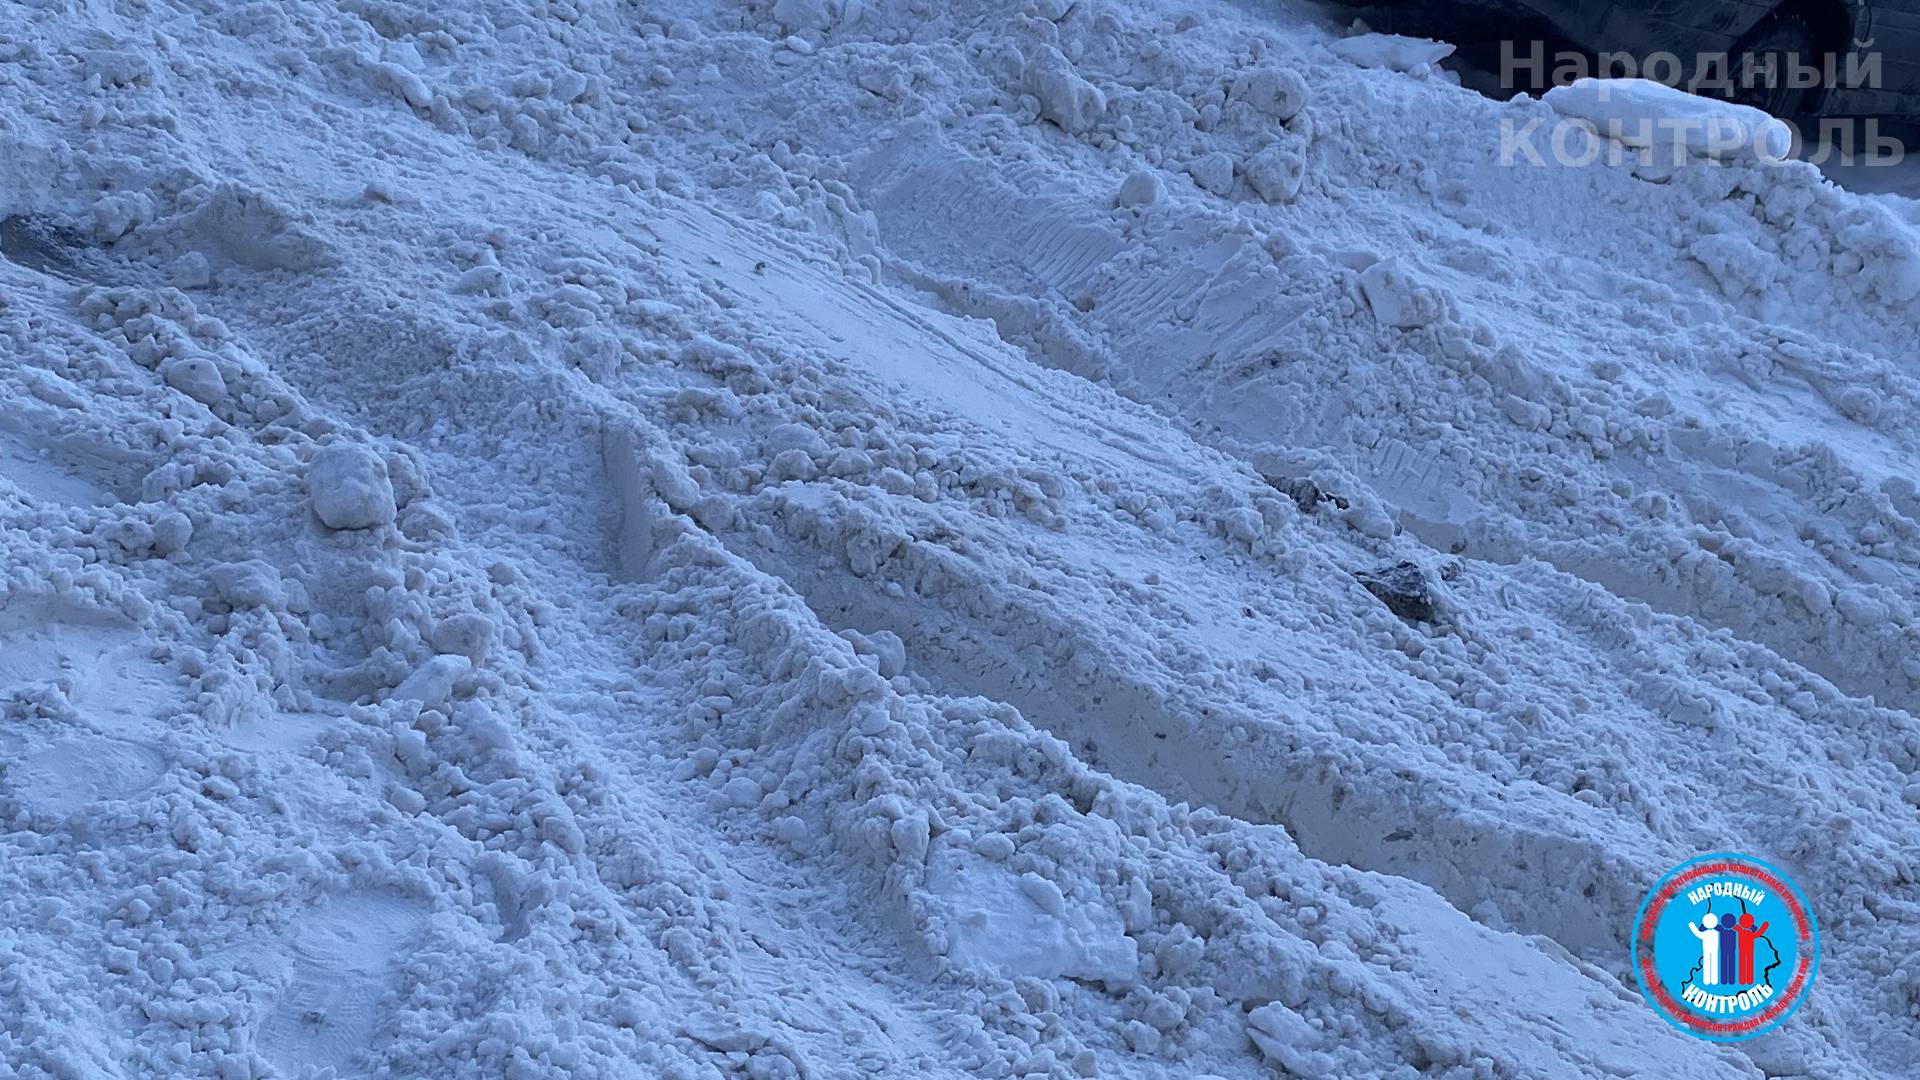 Уборка снега с поднятым ковшом, Лениногорск